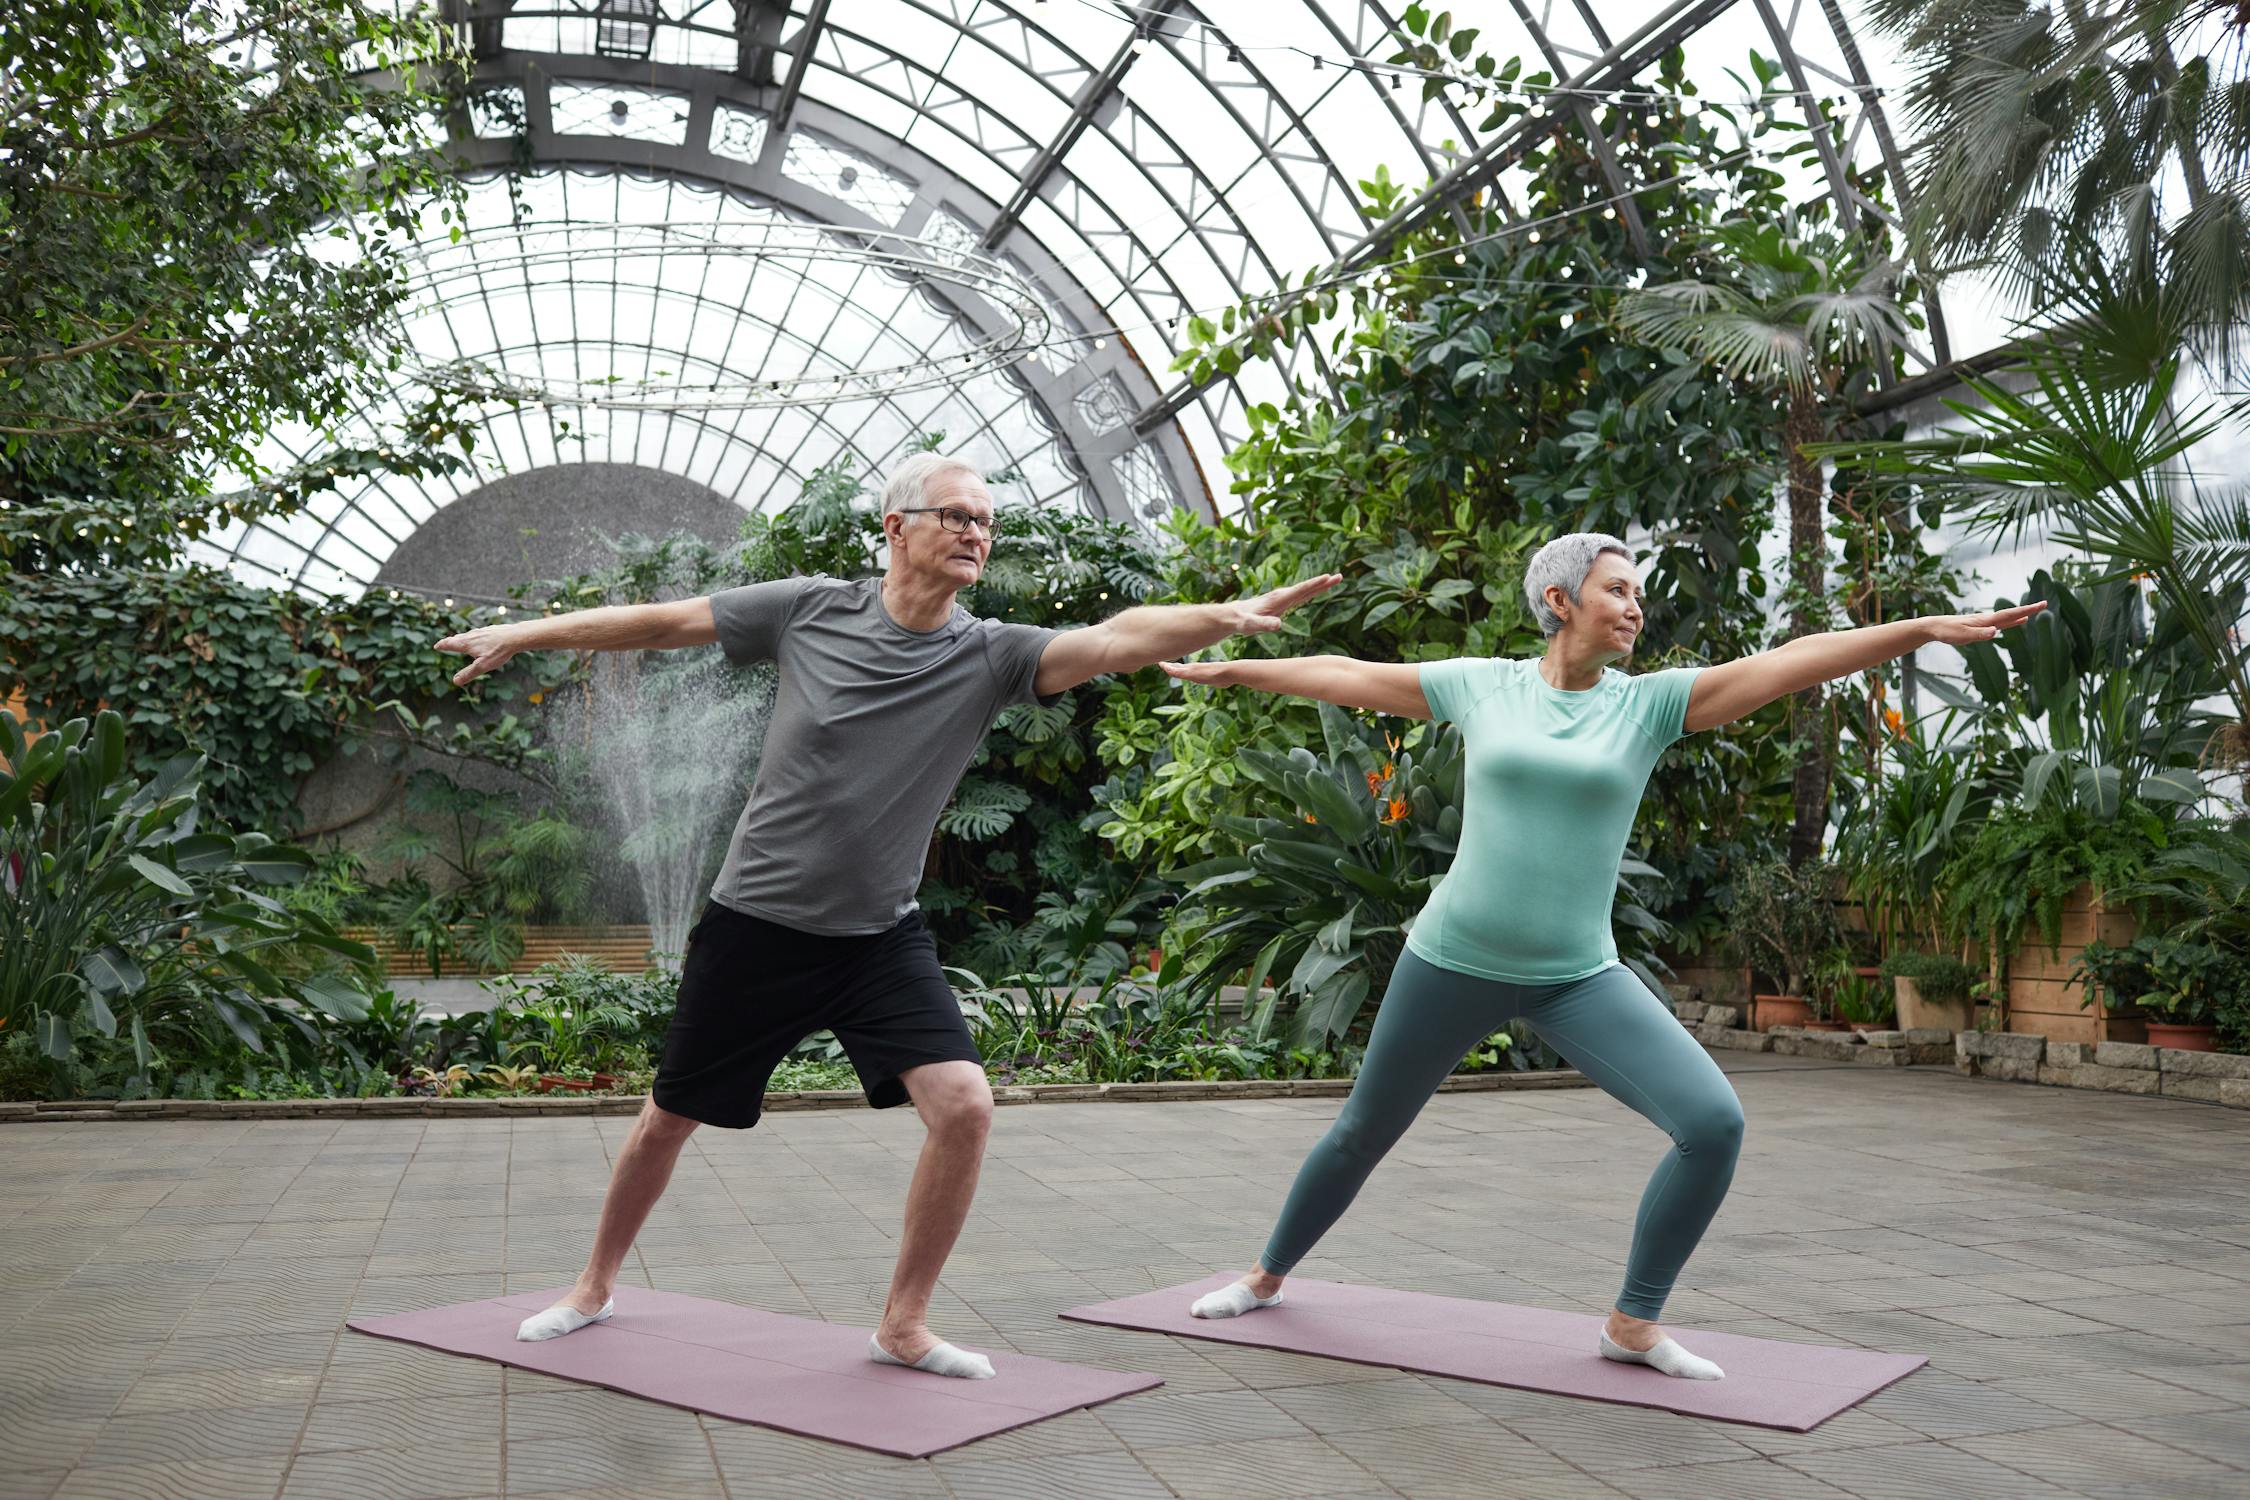 O exercício pode ser antienvelhecimento?